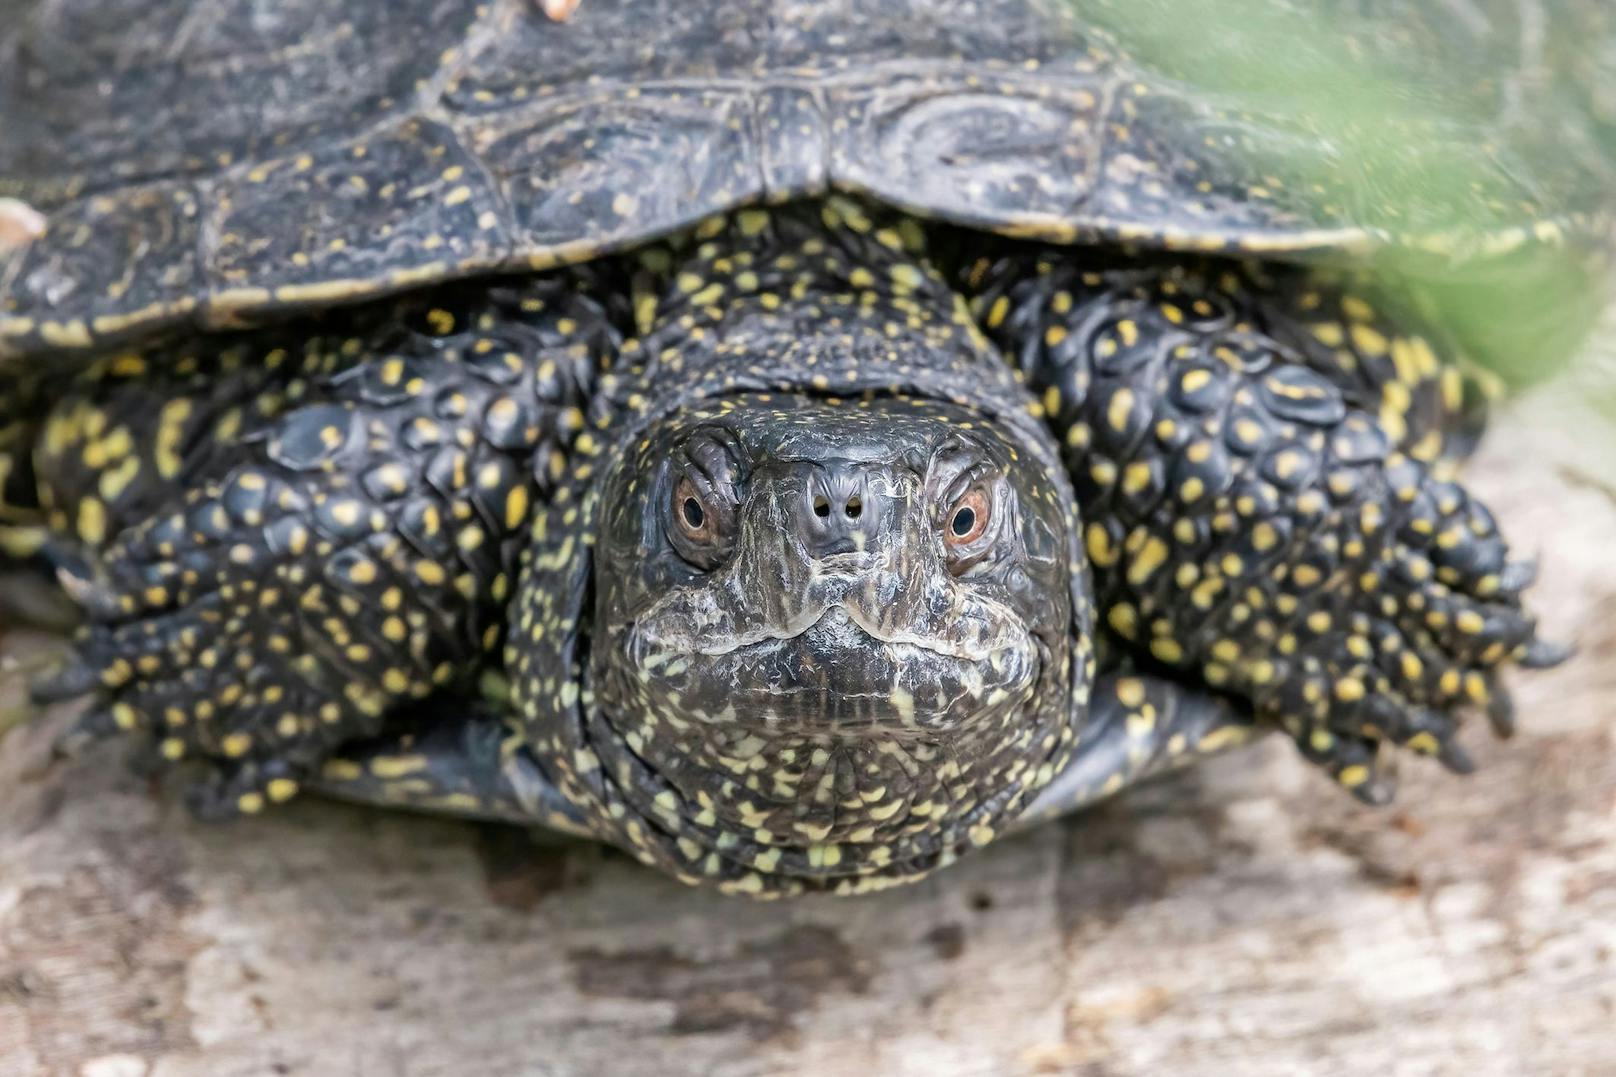 "Von ihnen schafft es aber nur ein Bruchteil bis ins Erwachsenenalter", so Maria Schindler, Leiterin des Sumpfschildkröten-Schutzprojekts.